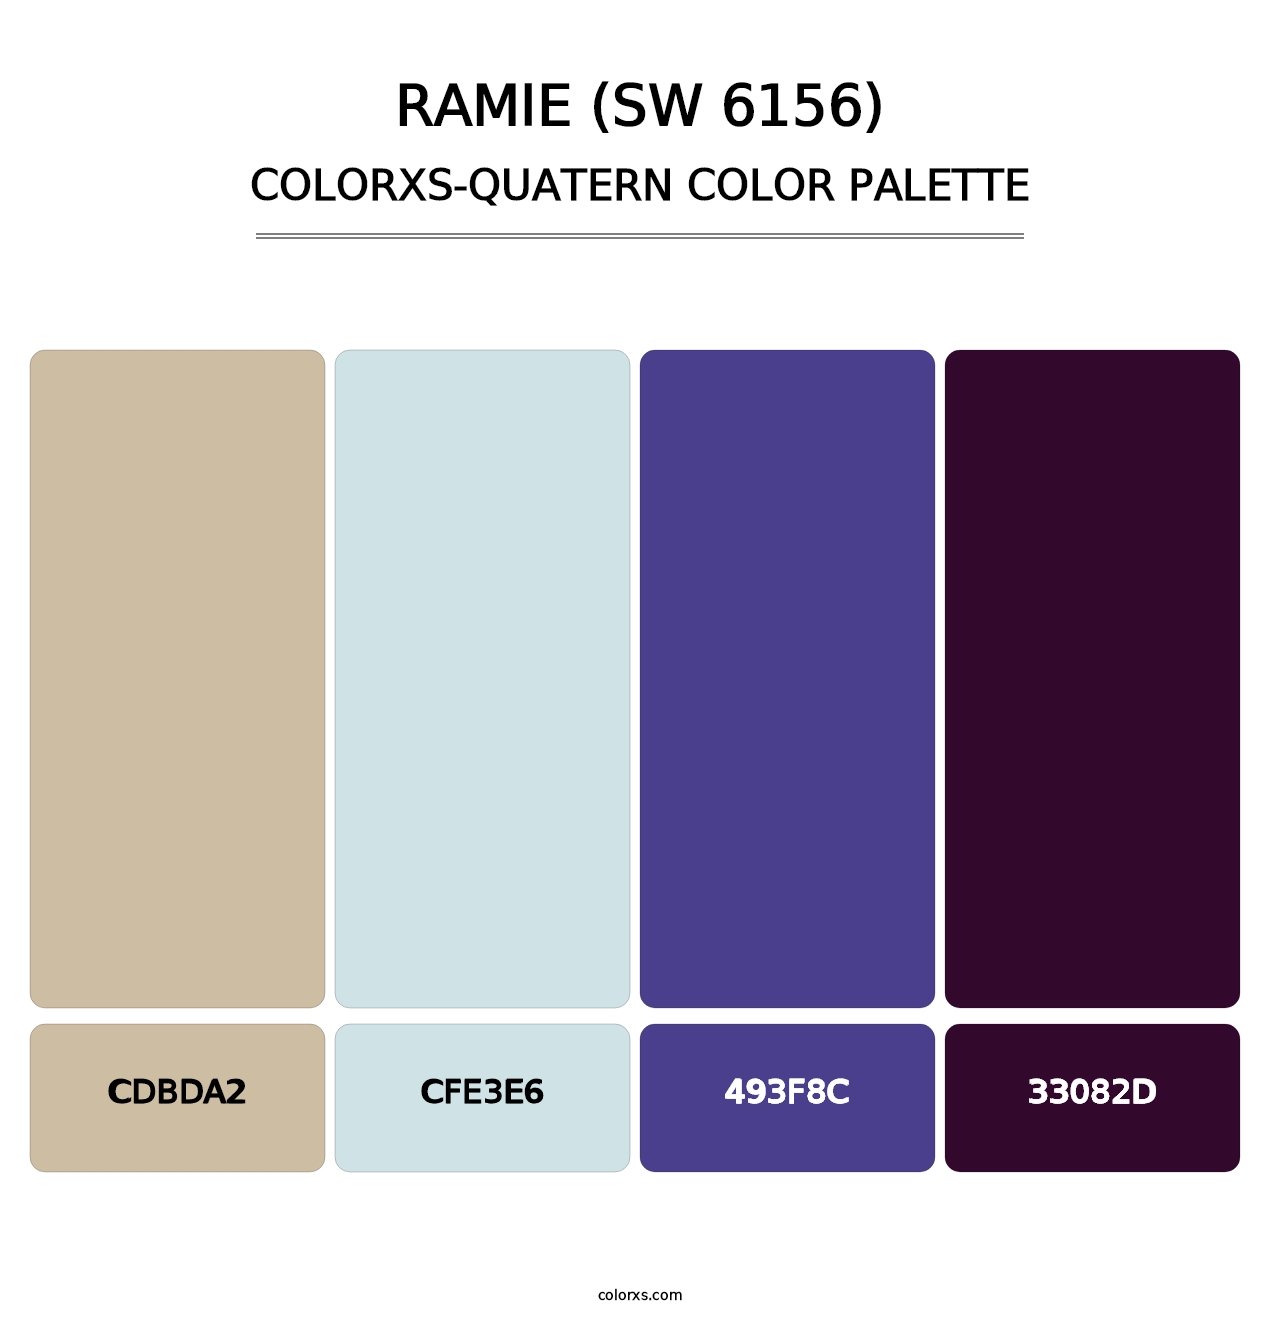 Ramie (SW 6156) - Colorxs Quatern Palette